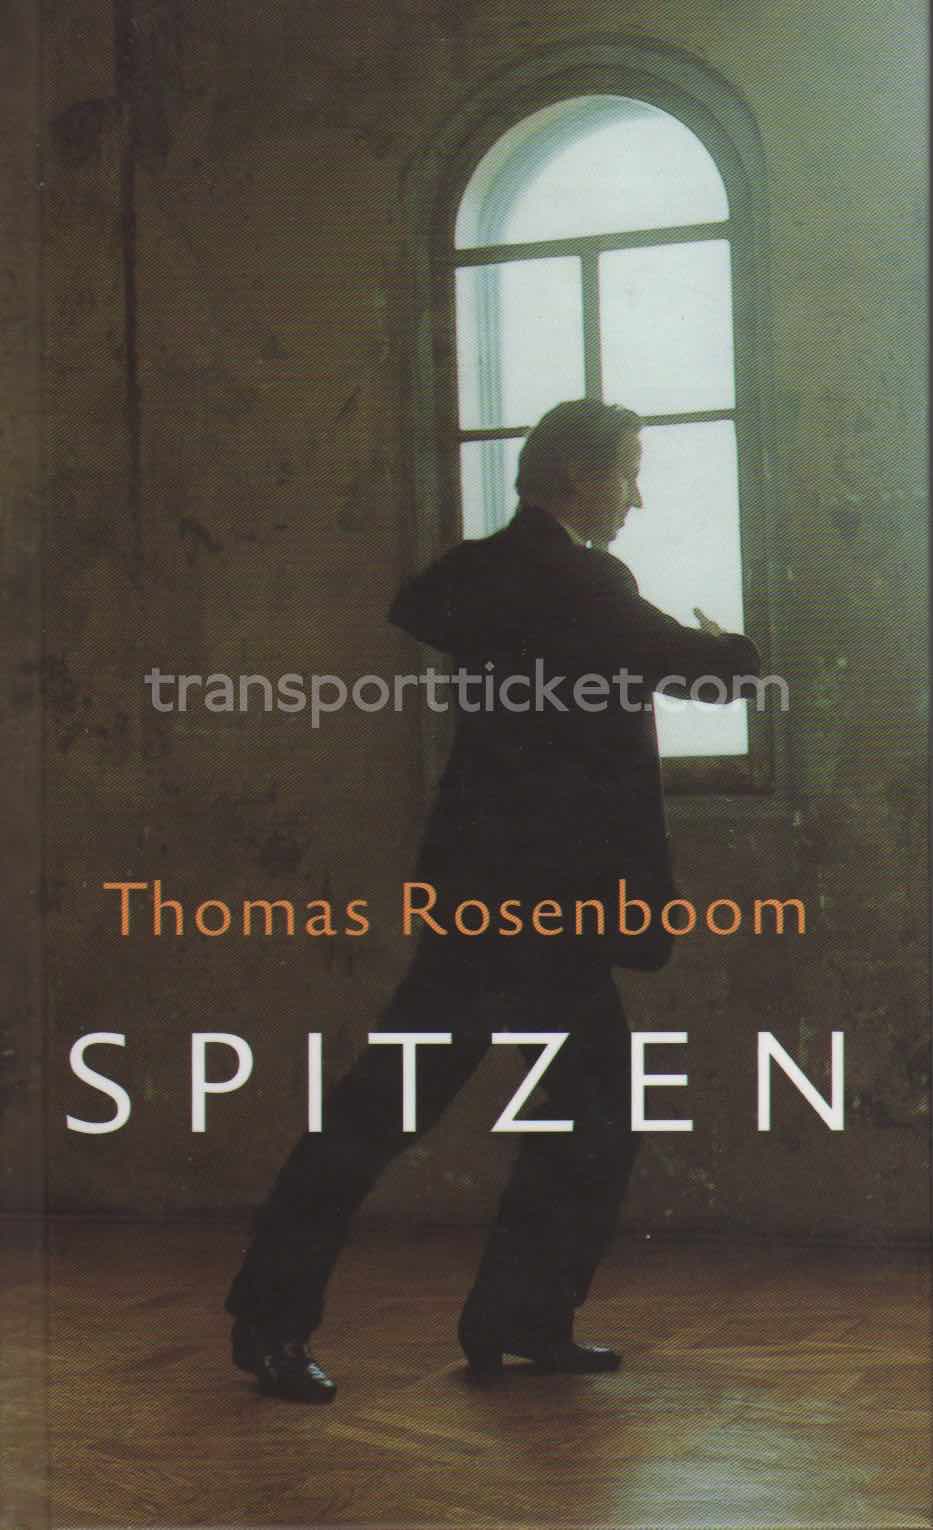 Thomas Rosenboom - Spitzen (2004)